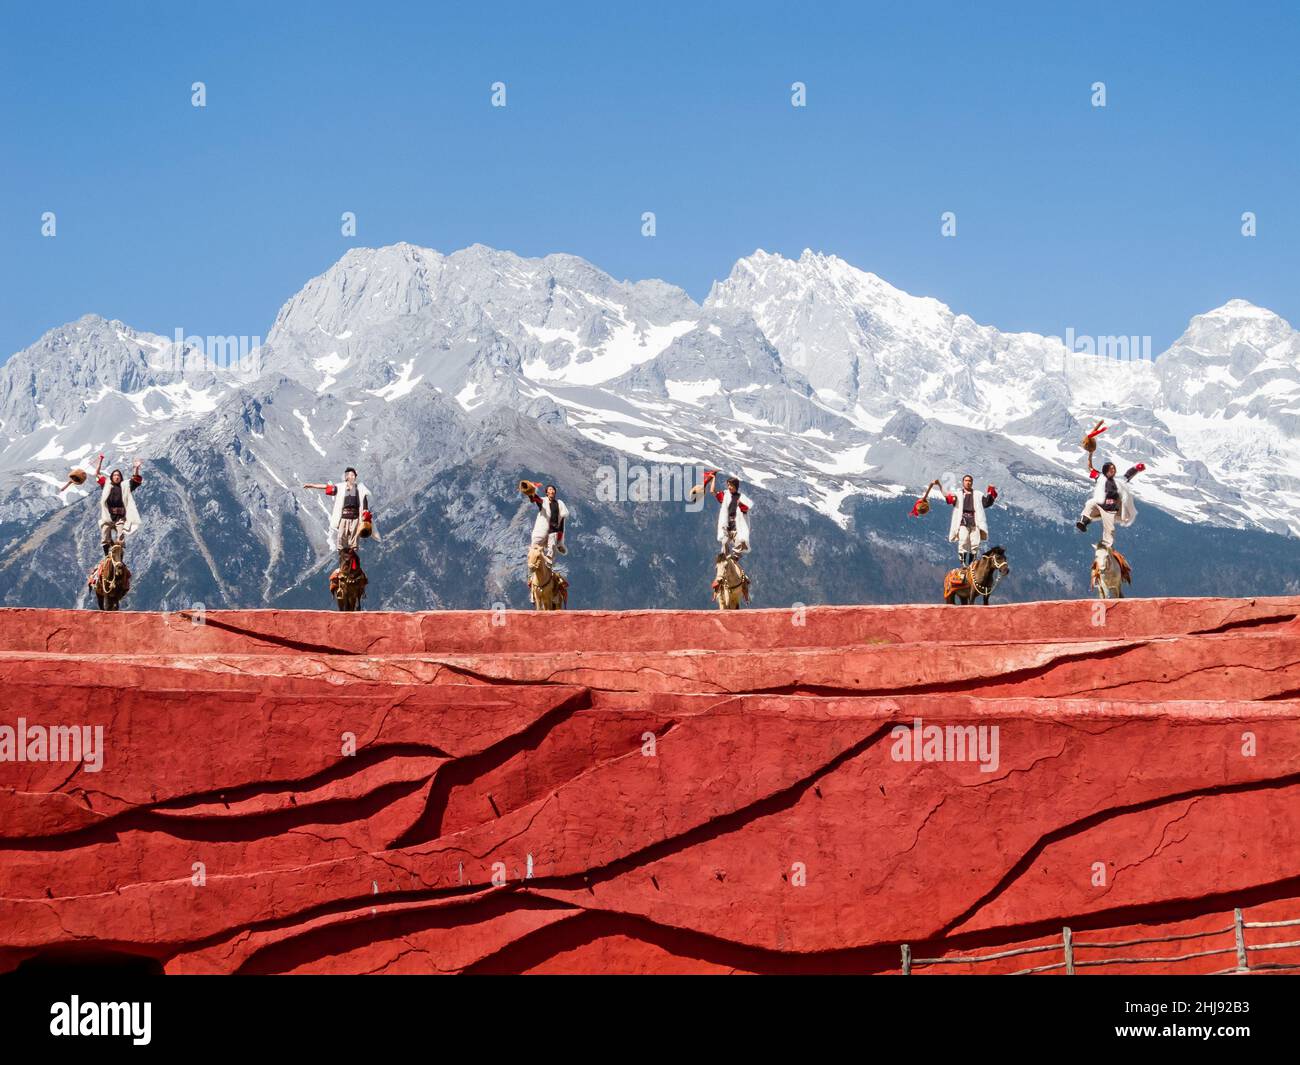 Die ethnische Minderheit der Naxi in ihren traditionellen Kostümen; Szene aus einer Performance mit dem Jadedrachen-Schneeberg im Hintergrund Stockfoto